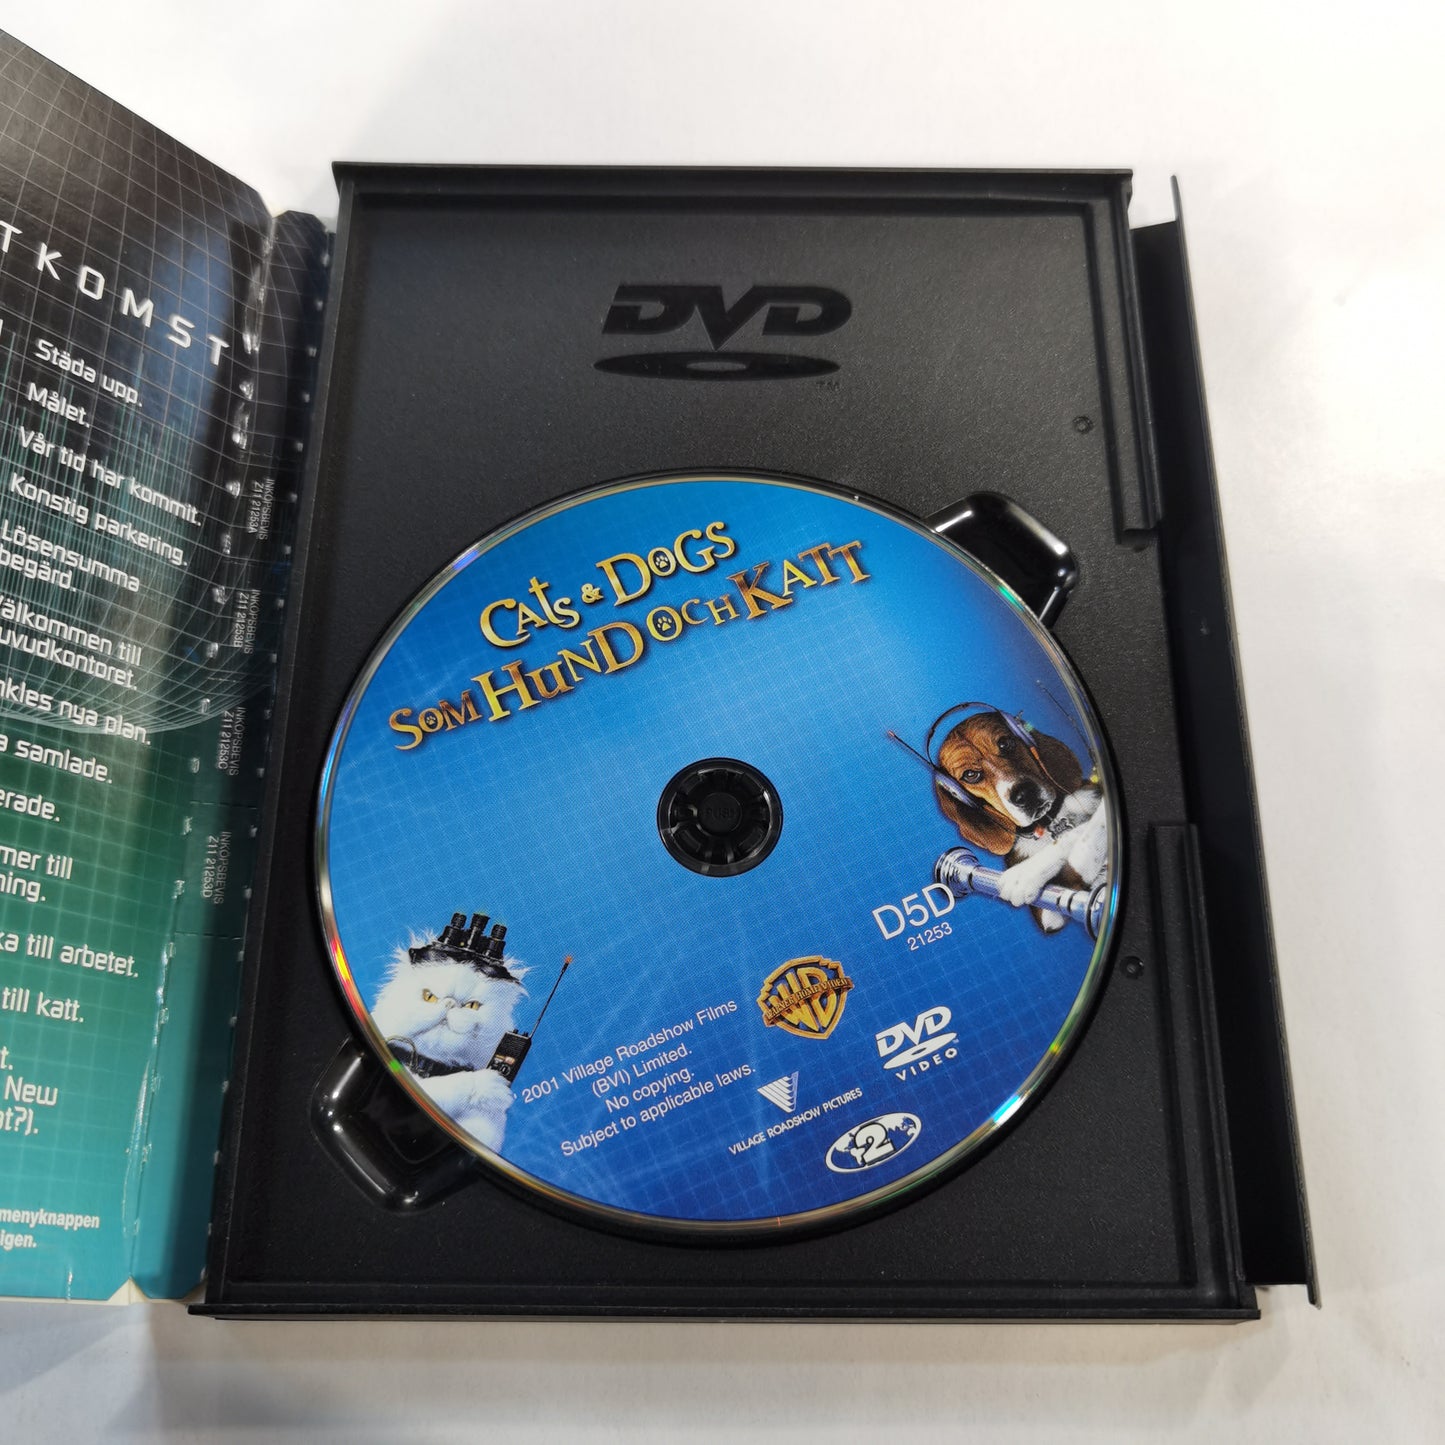 Cats & Dogs ( Som Hund Och Katt ) (2001) - DVD SE 2002  Snap Case